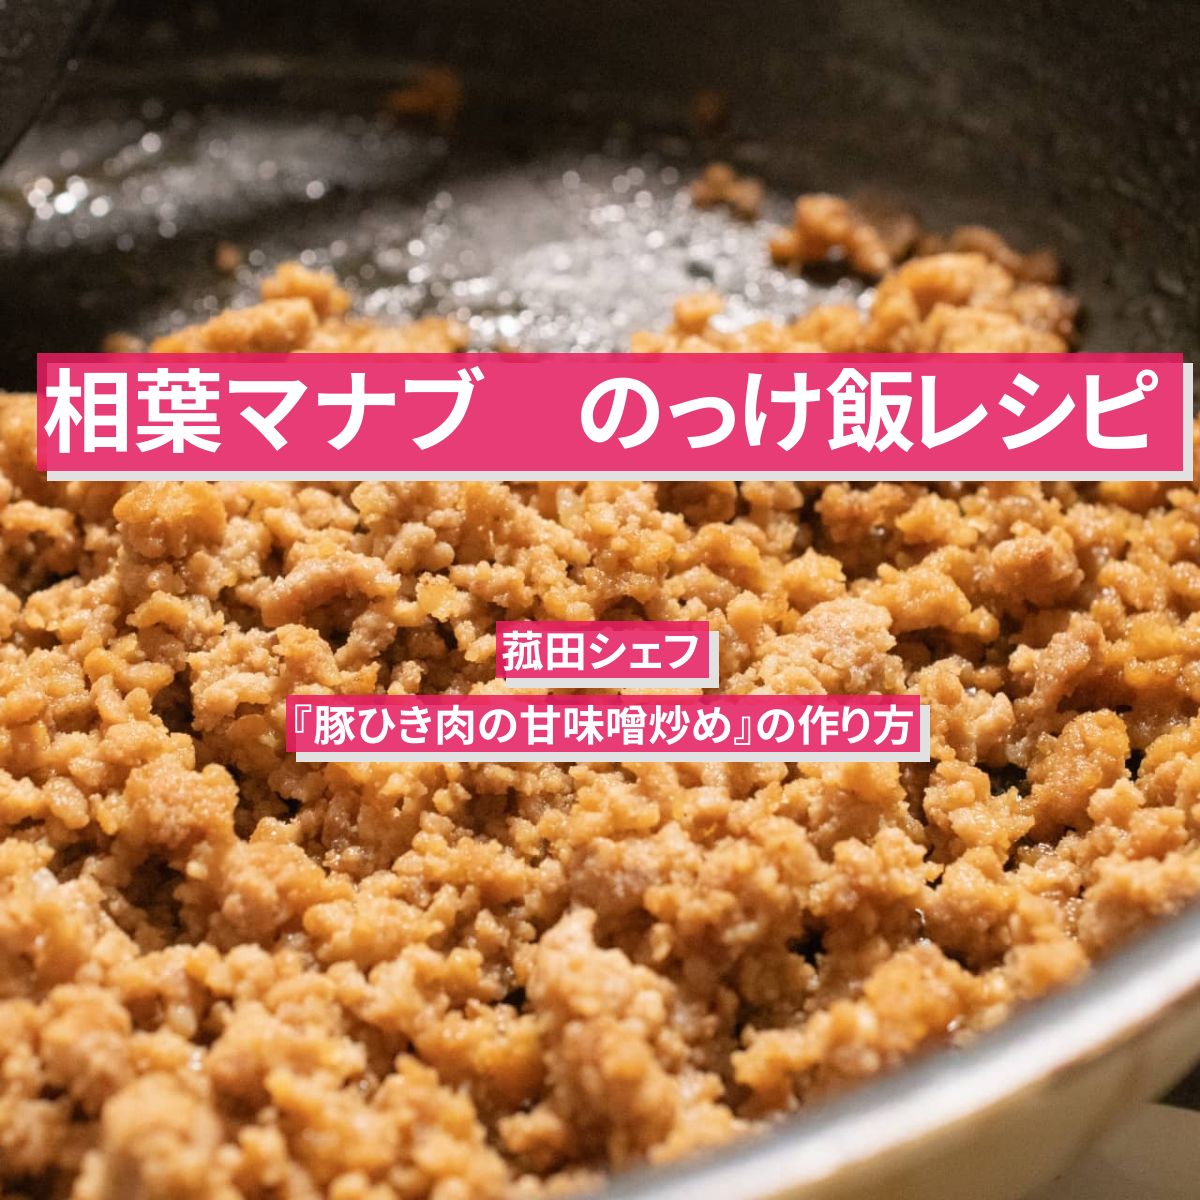 【相葉マナブ】『豚ひき肉の甘味噌炒め』菰田シェフのっけ飯レシピ作り方